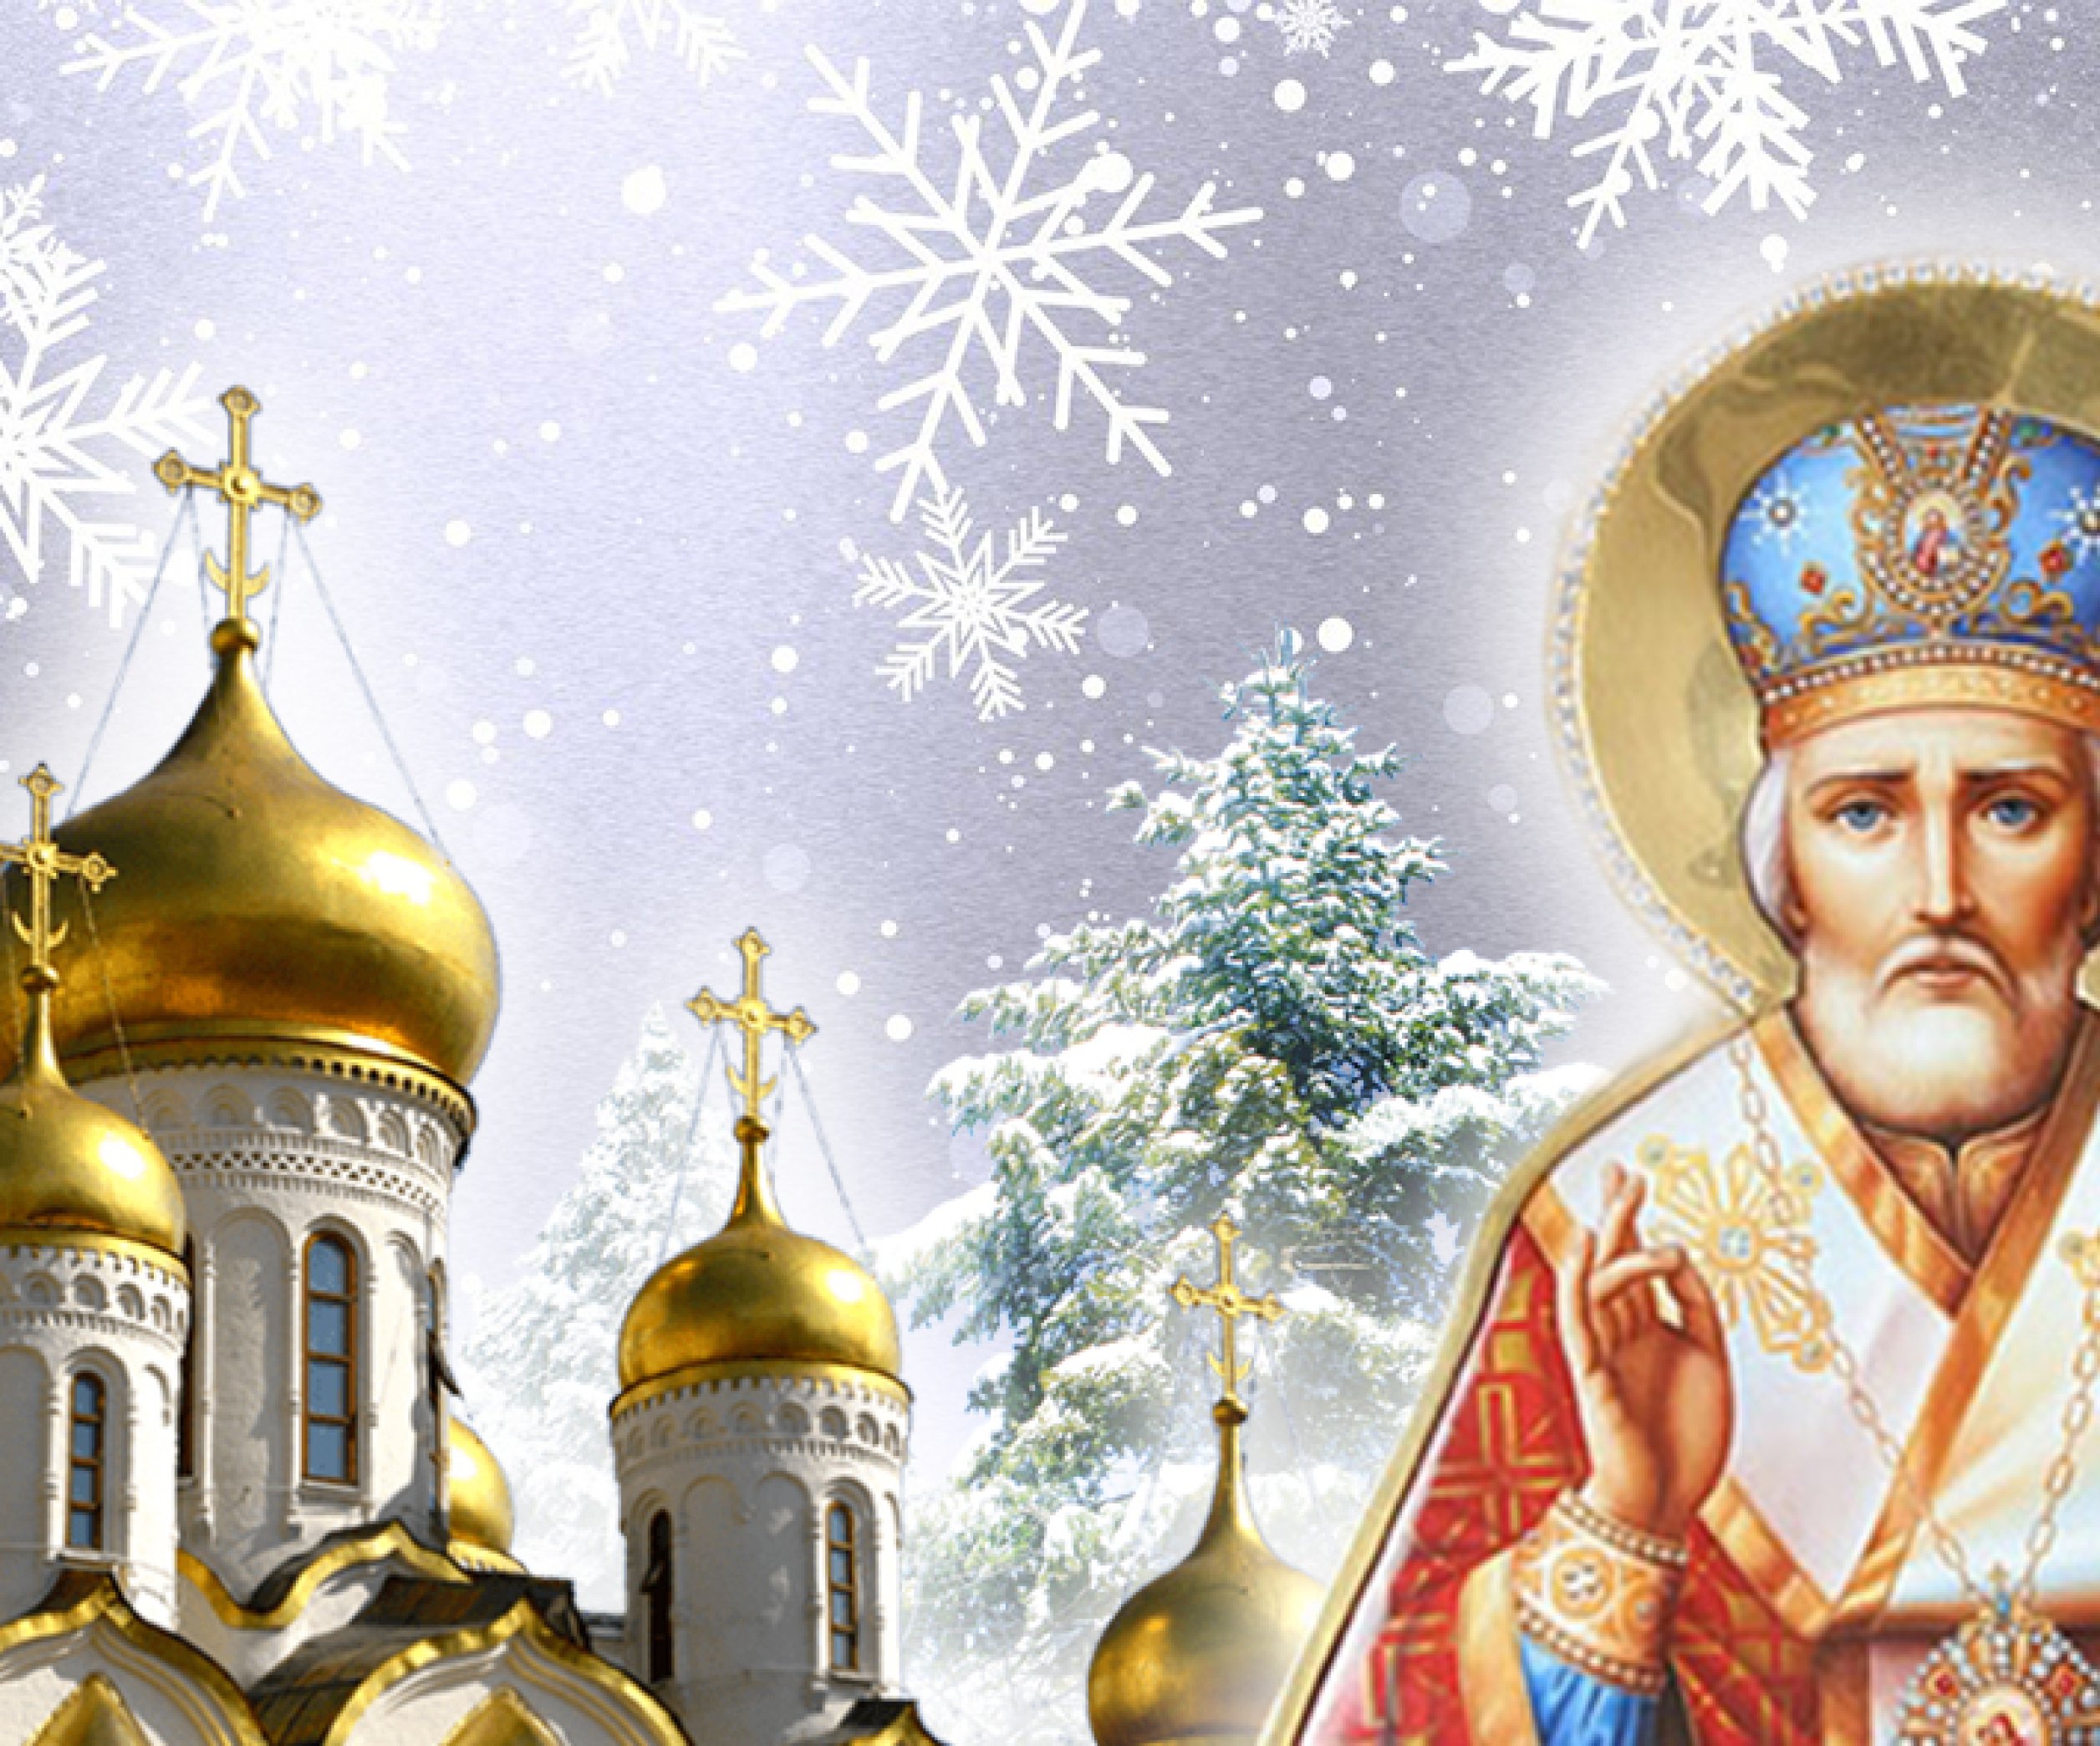 Святого Николая 6 декабря года - что нельзя делать, традиции и приметы | РБК Украина